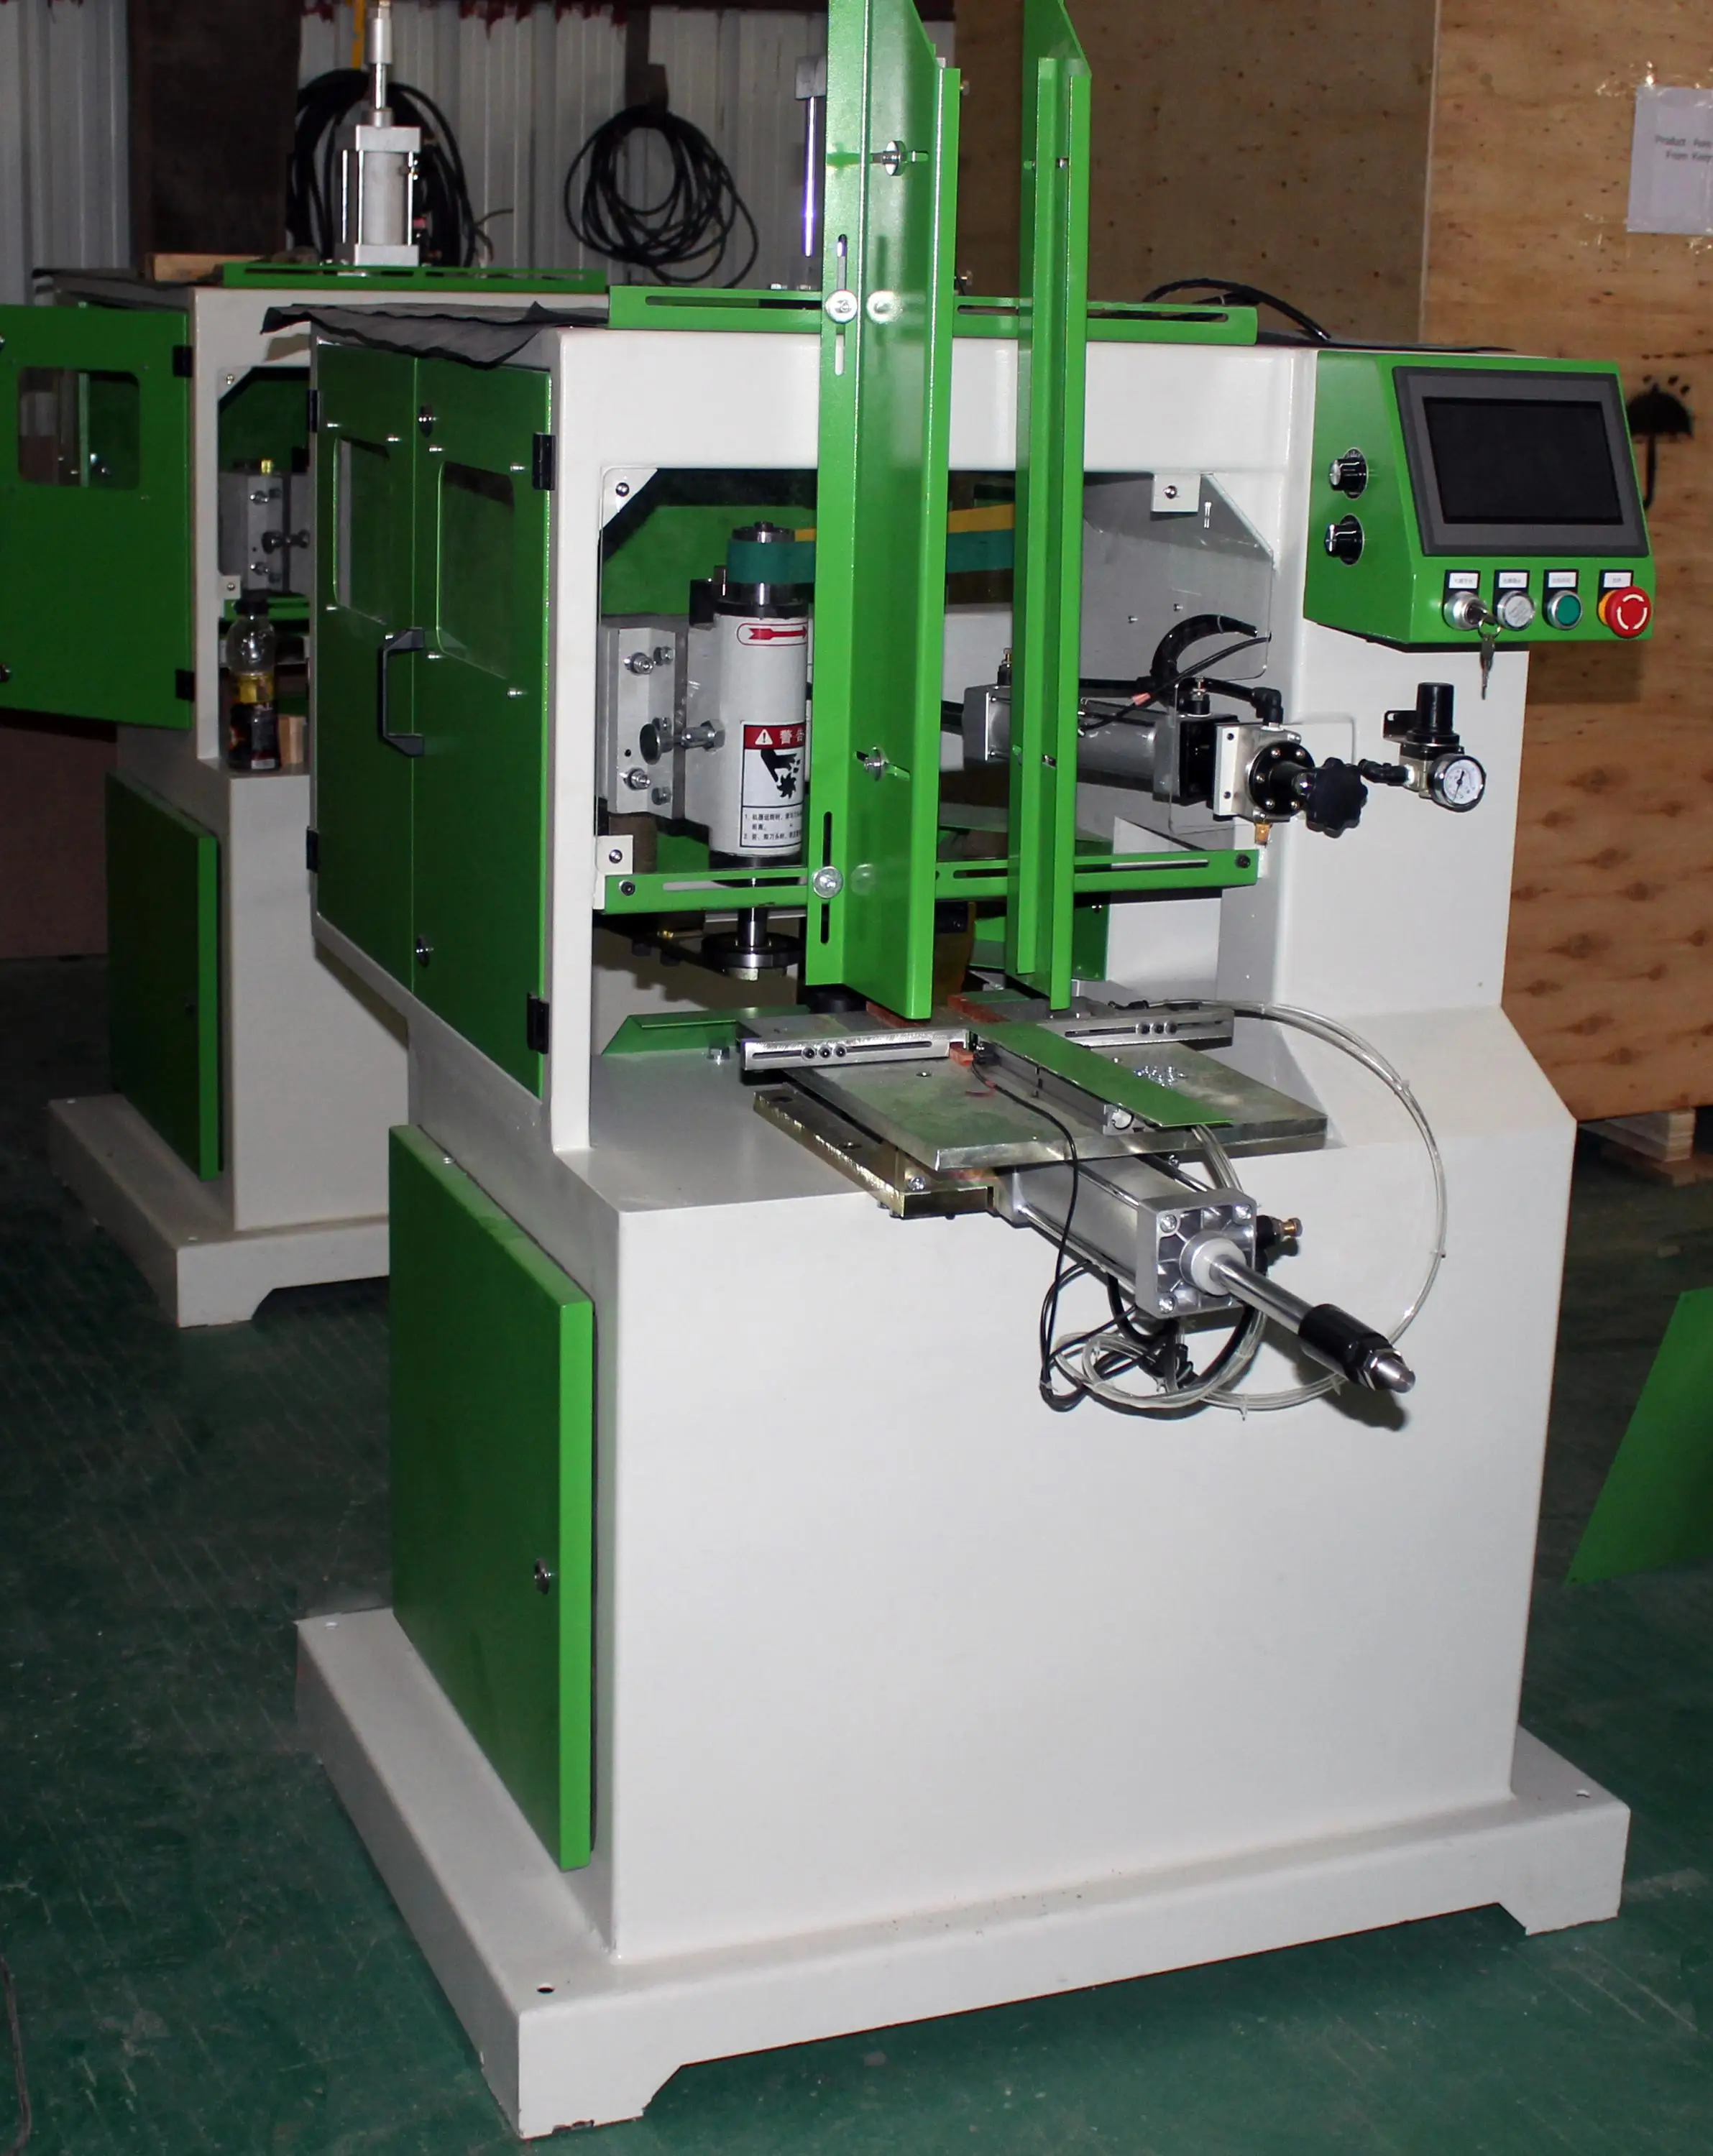 automatic shaper machine operation pdf